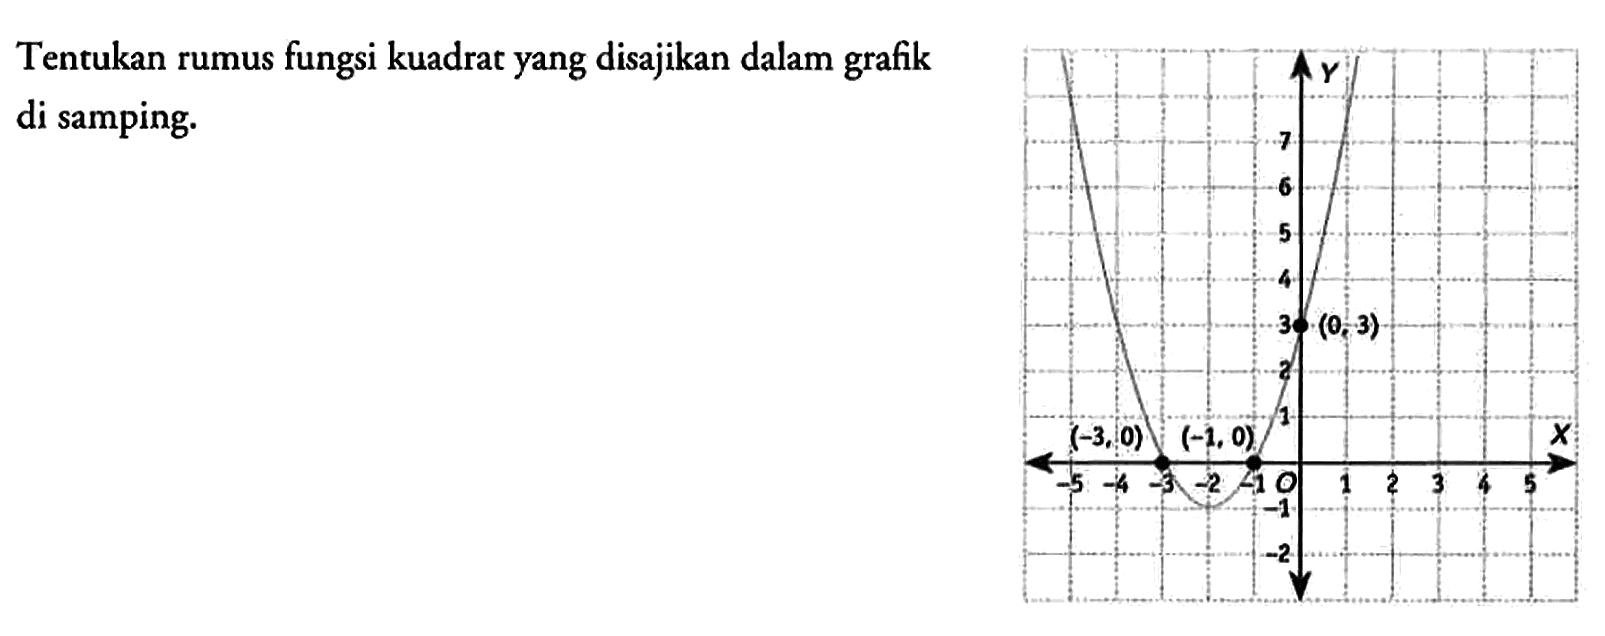 Tentukan rumus fungsi kuadrat yang disajikan dalam grafik di samping. Y 7 6 5 4 3 (0,3) 2 1 -5 -4 -3 (-3,0) -2 -1 (-1,0) 0 1 2 3 4 5 X -1 -2